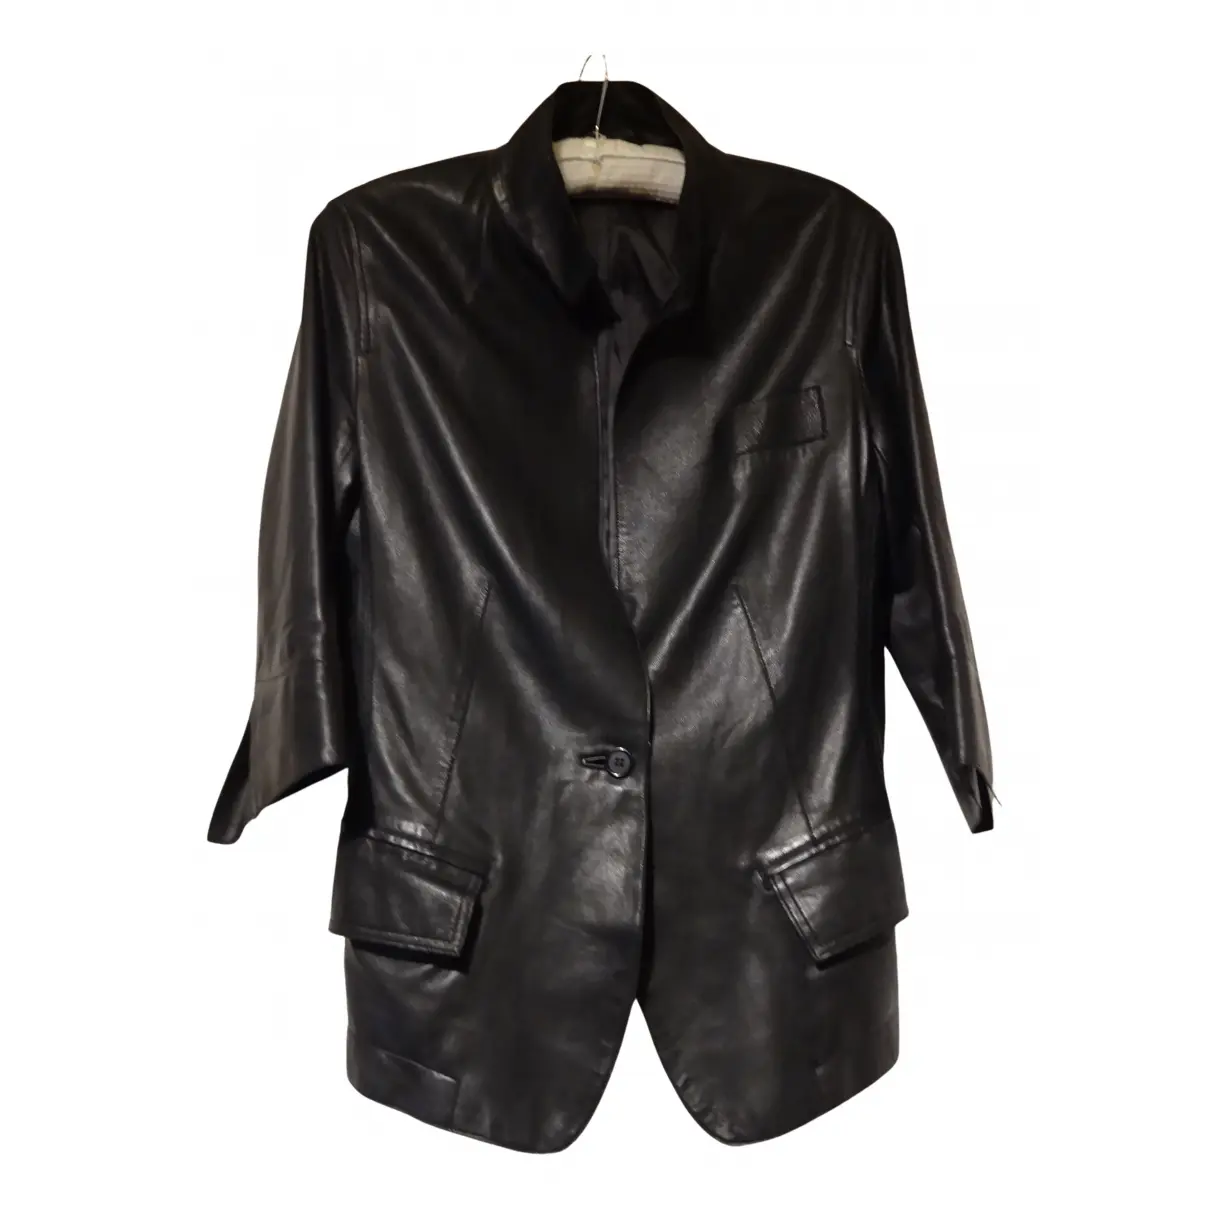 Leather biker jacket Nicole Farhi